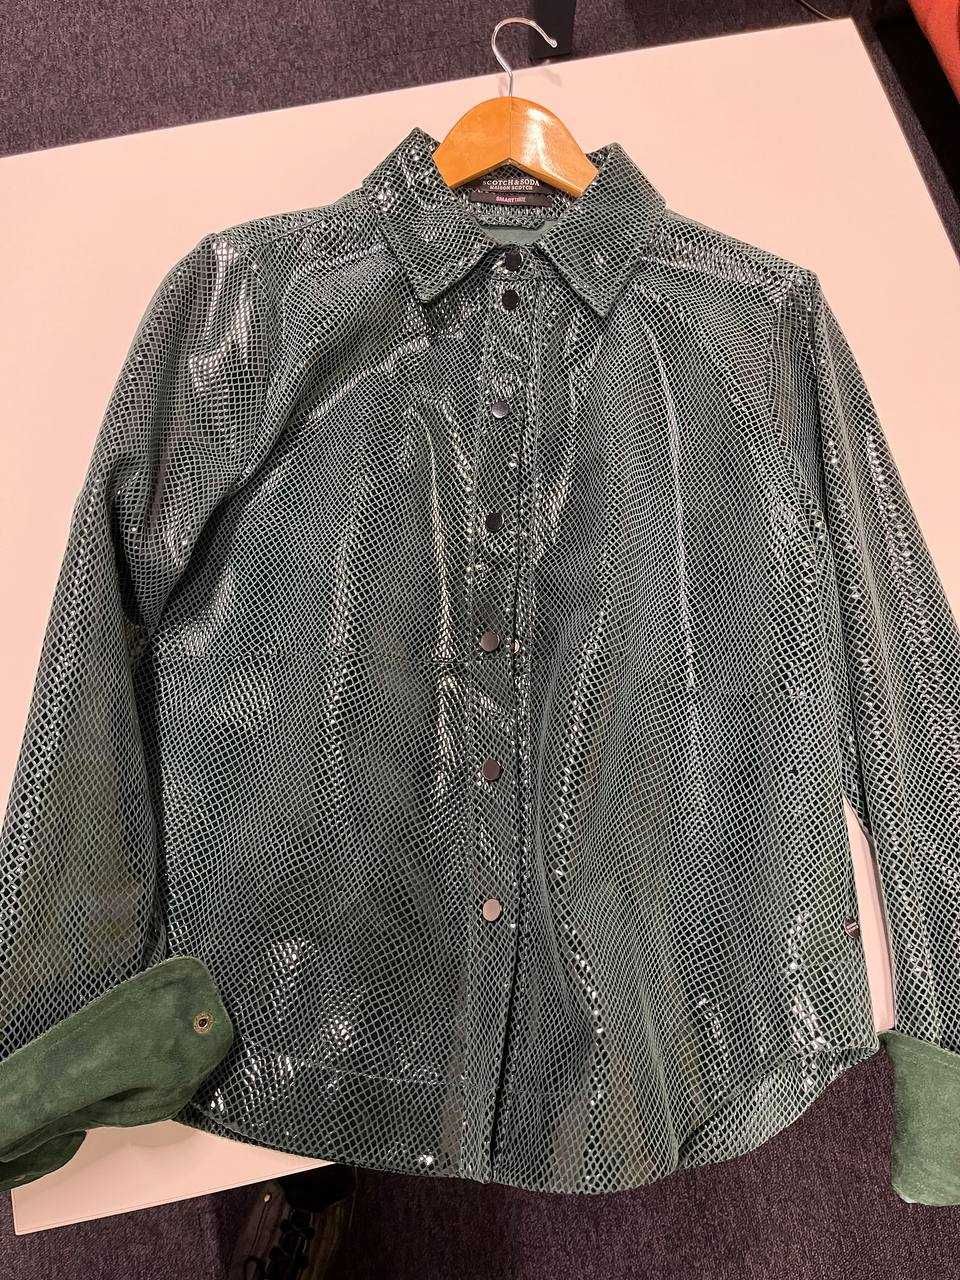 Замшева рубашка/куртка SCOTCH&SODA Maison Scotch 38р. Зеленого кольору